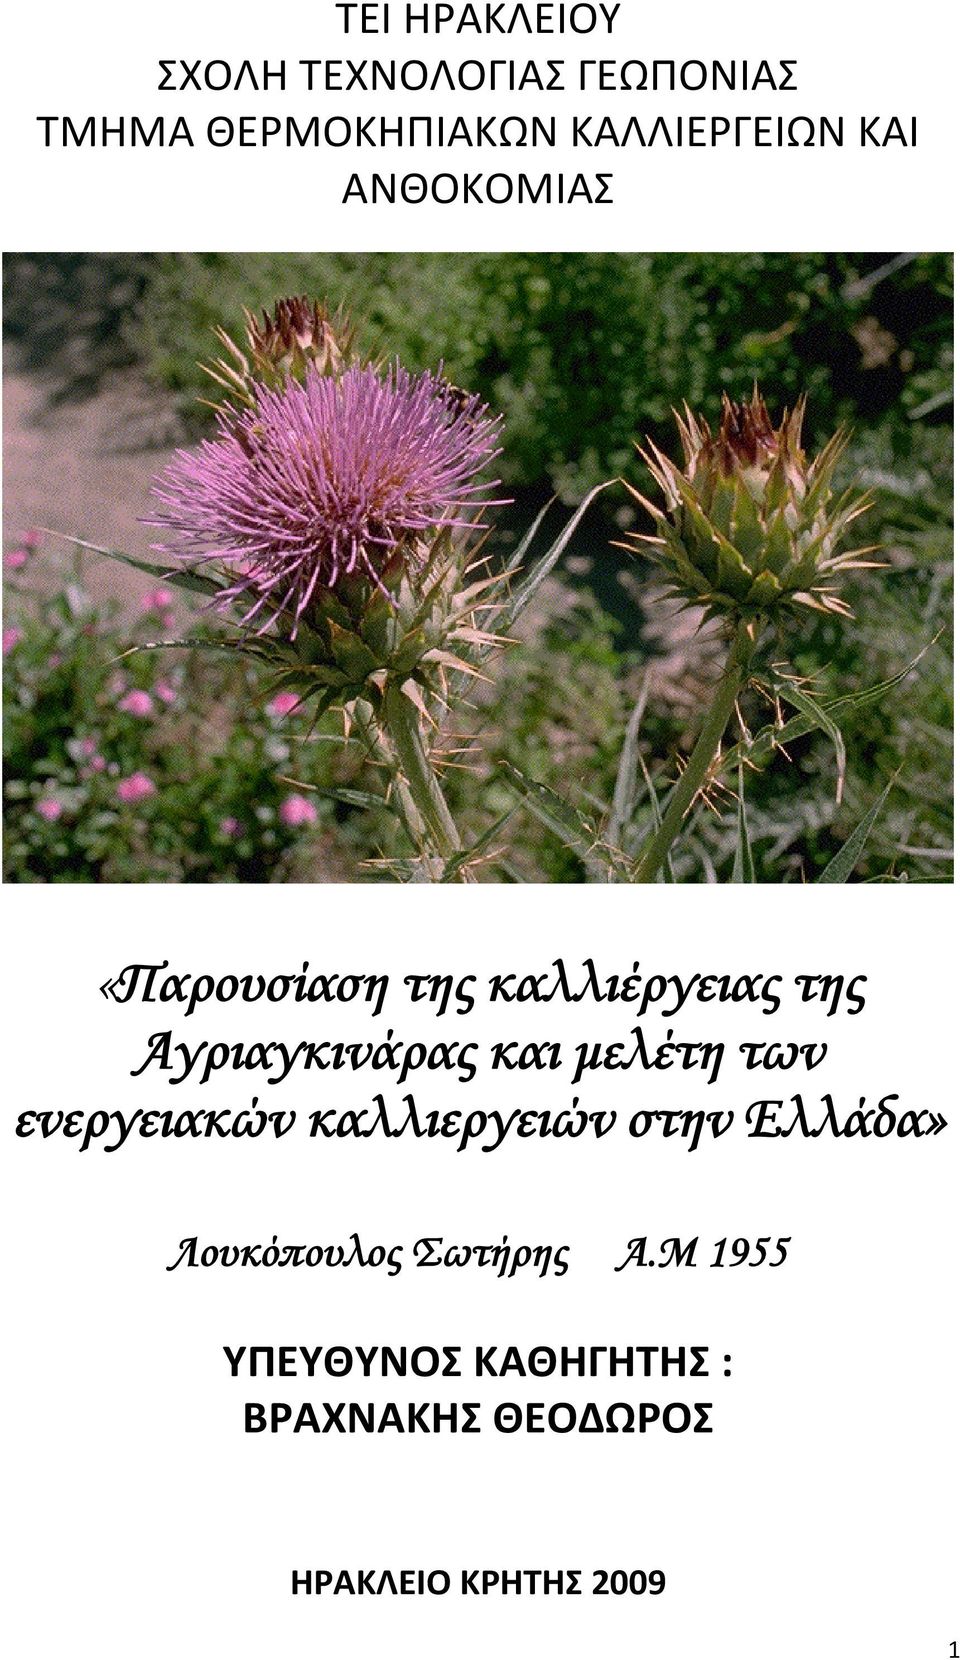 Αγριαγκινάρας και μελέτη των ενεργειακών καλλιεργειών στην Ελλάδα»